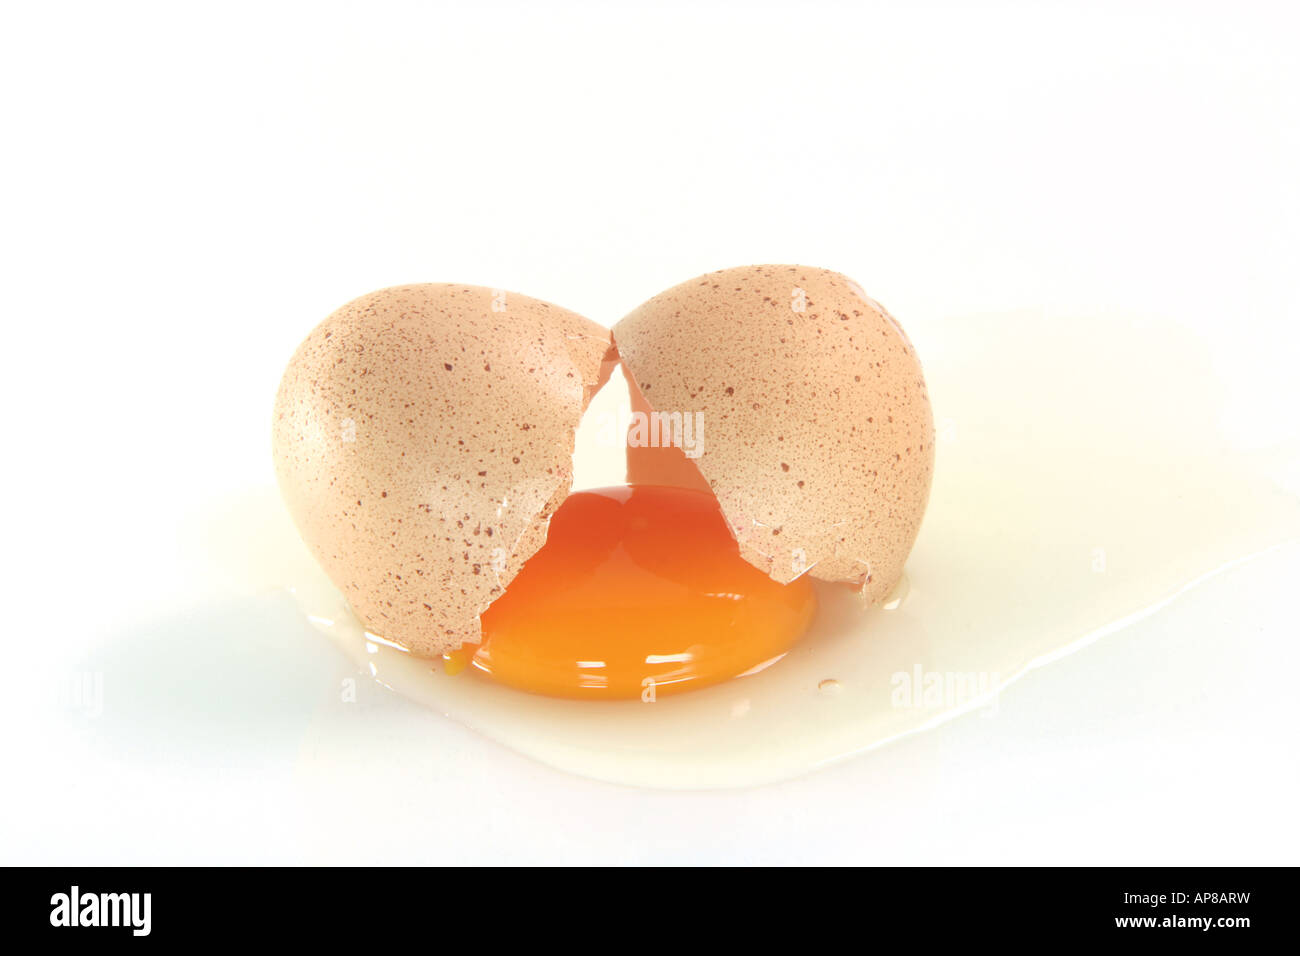 Разбей яйцо 2. Цесариные яйца разбитое. Разбитые два яйца. Яйца цесарки польза и вред для организма человека фото. Разбитое яйцо в контейнере фото.